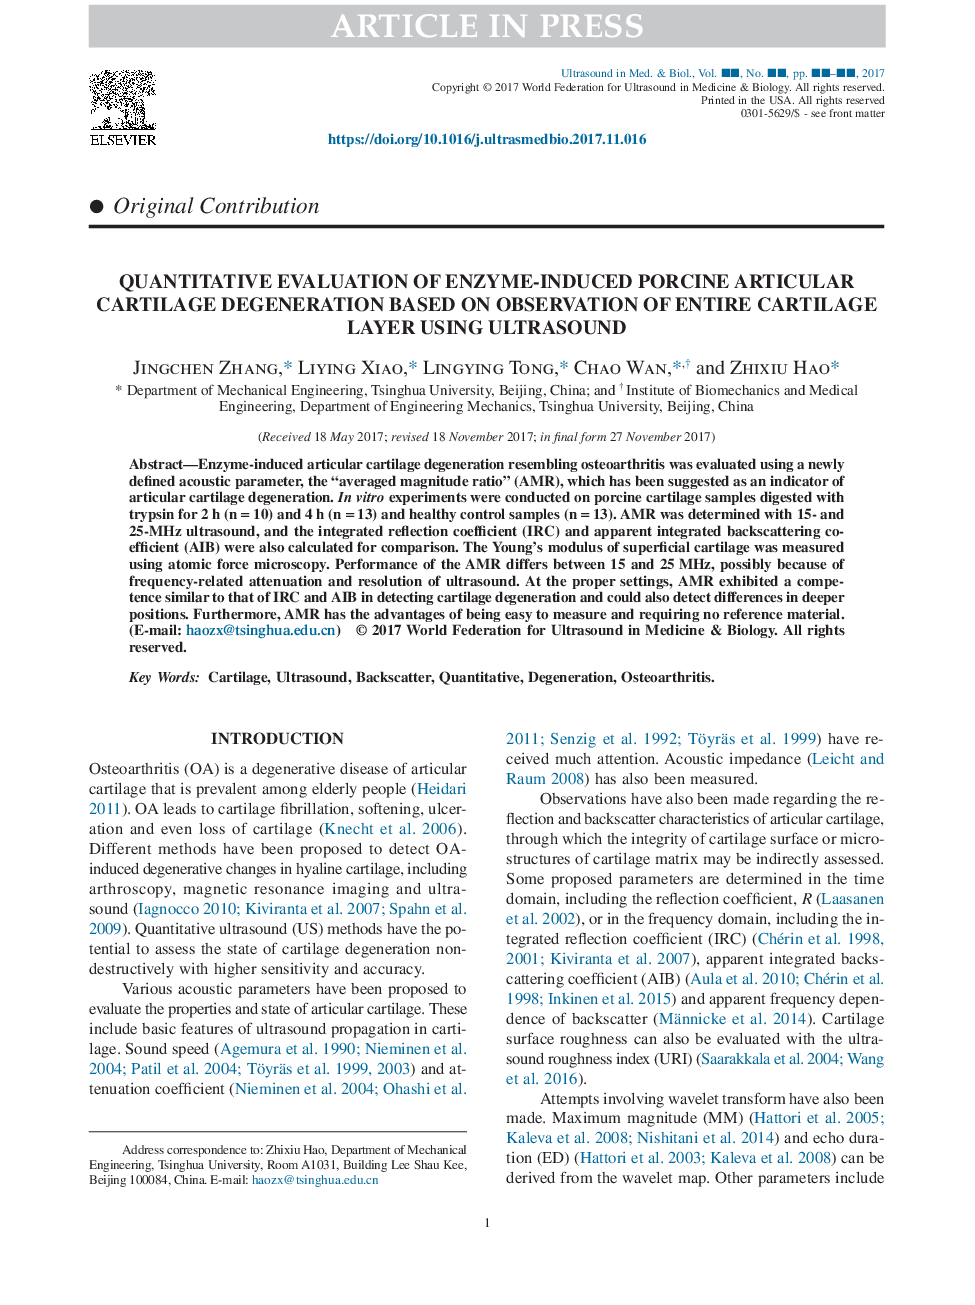 Quantitative Evaluation of Enzyme-Induced Porcine Articular Cartilage Degeneration Based on Observation of Entire Cartilage Layer Using Ultrasound